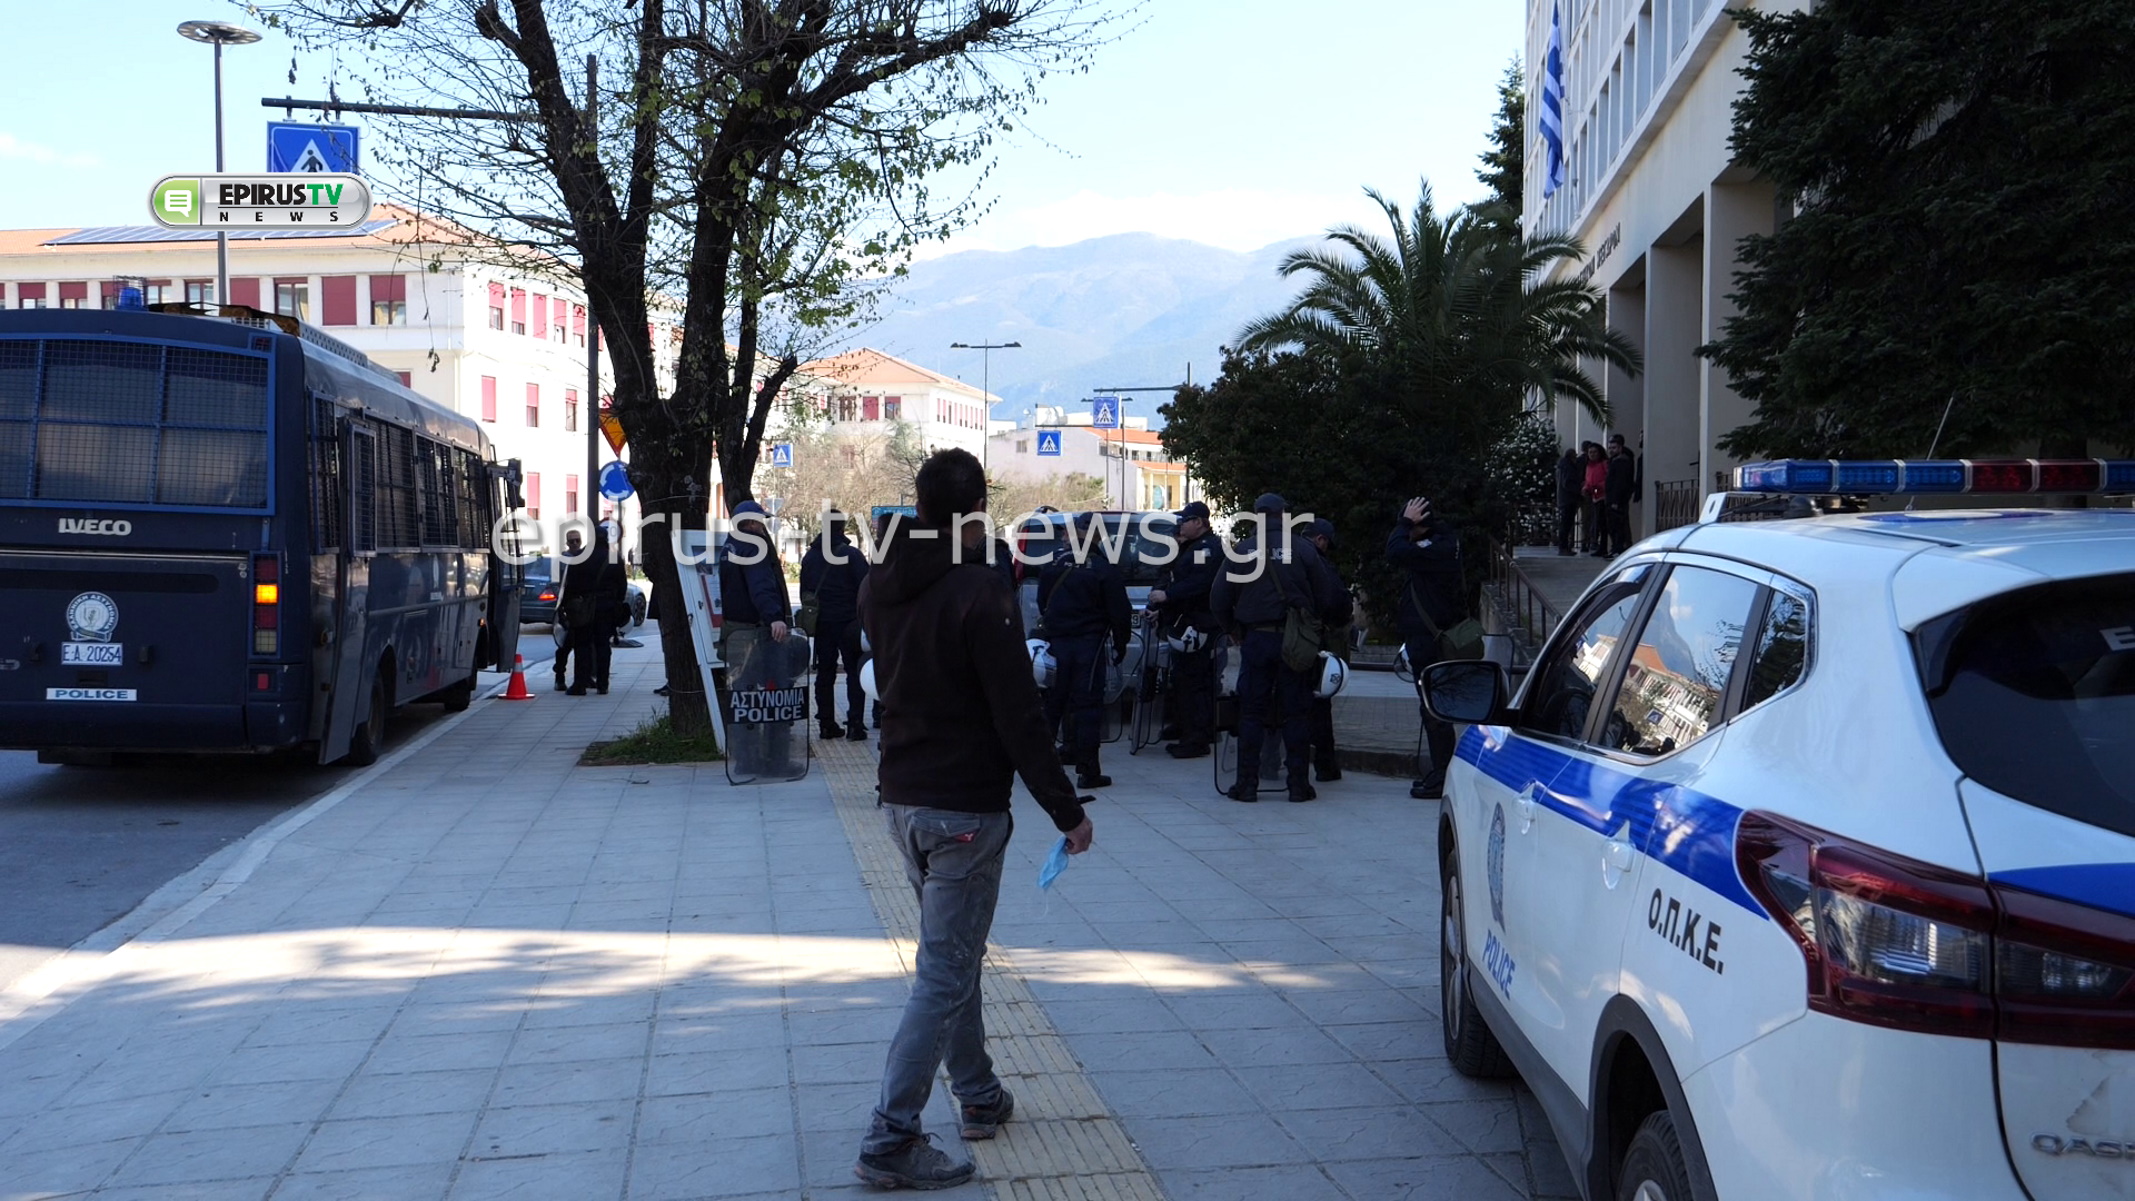 Ιωάννινα: Νέα προθεσμία για τη Μεγάλη Τετάρτη (11/04) πήραν οι 4 συλληφθέντες στη συμπλοκή οπαδών